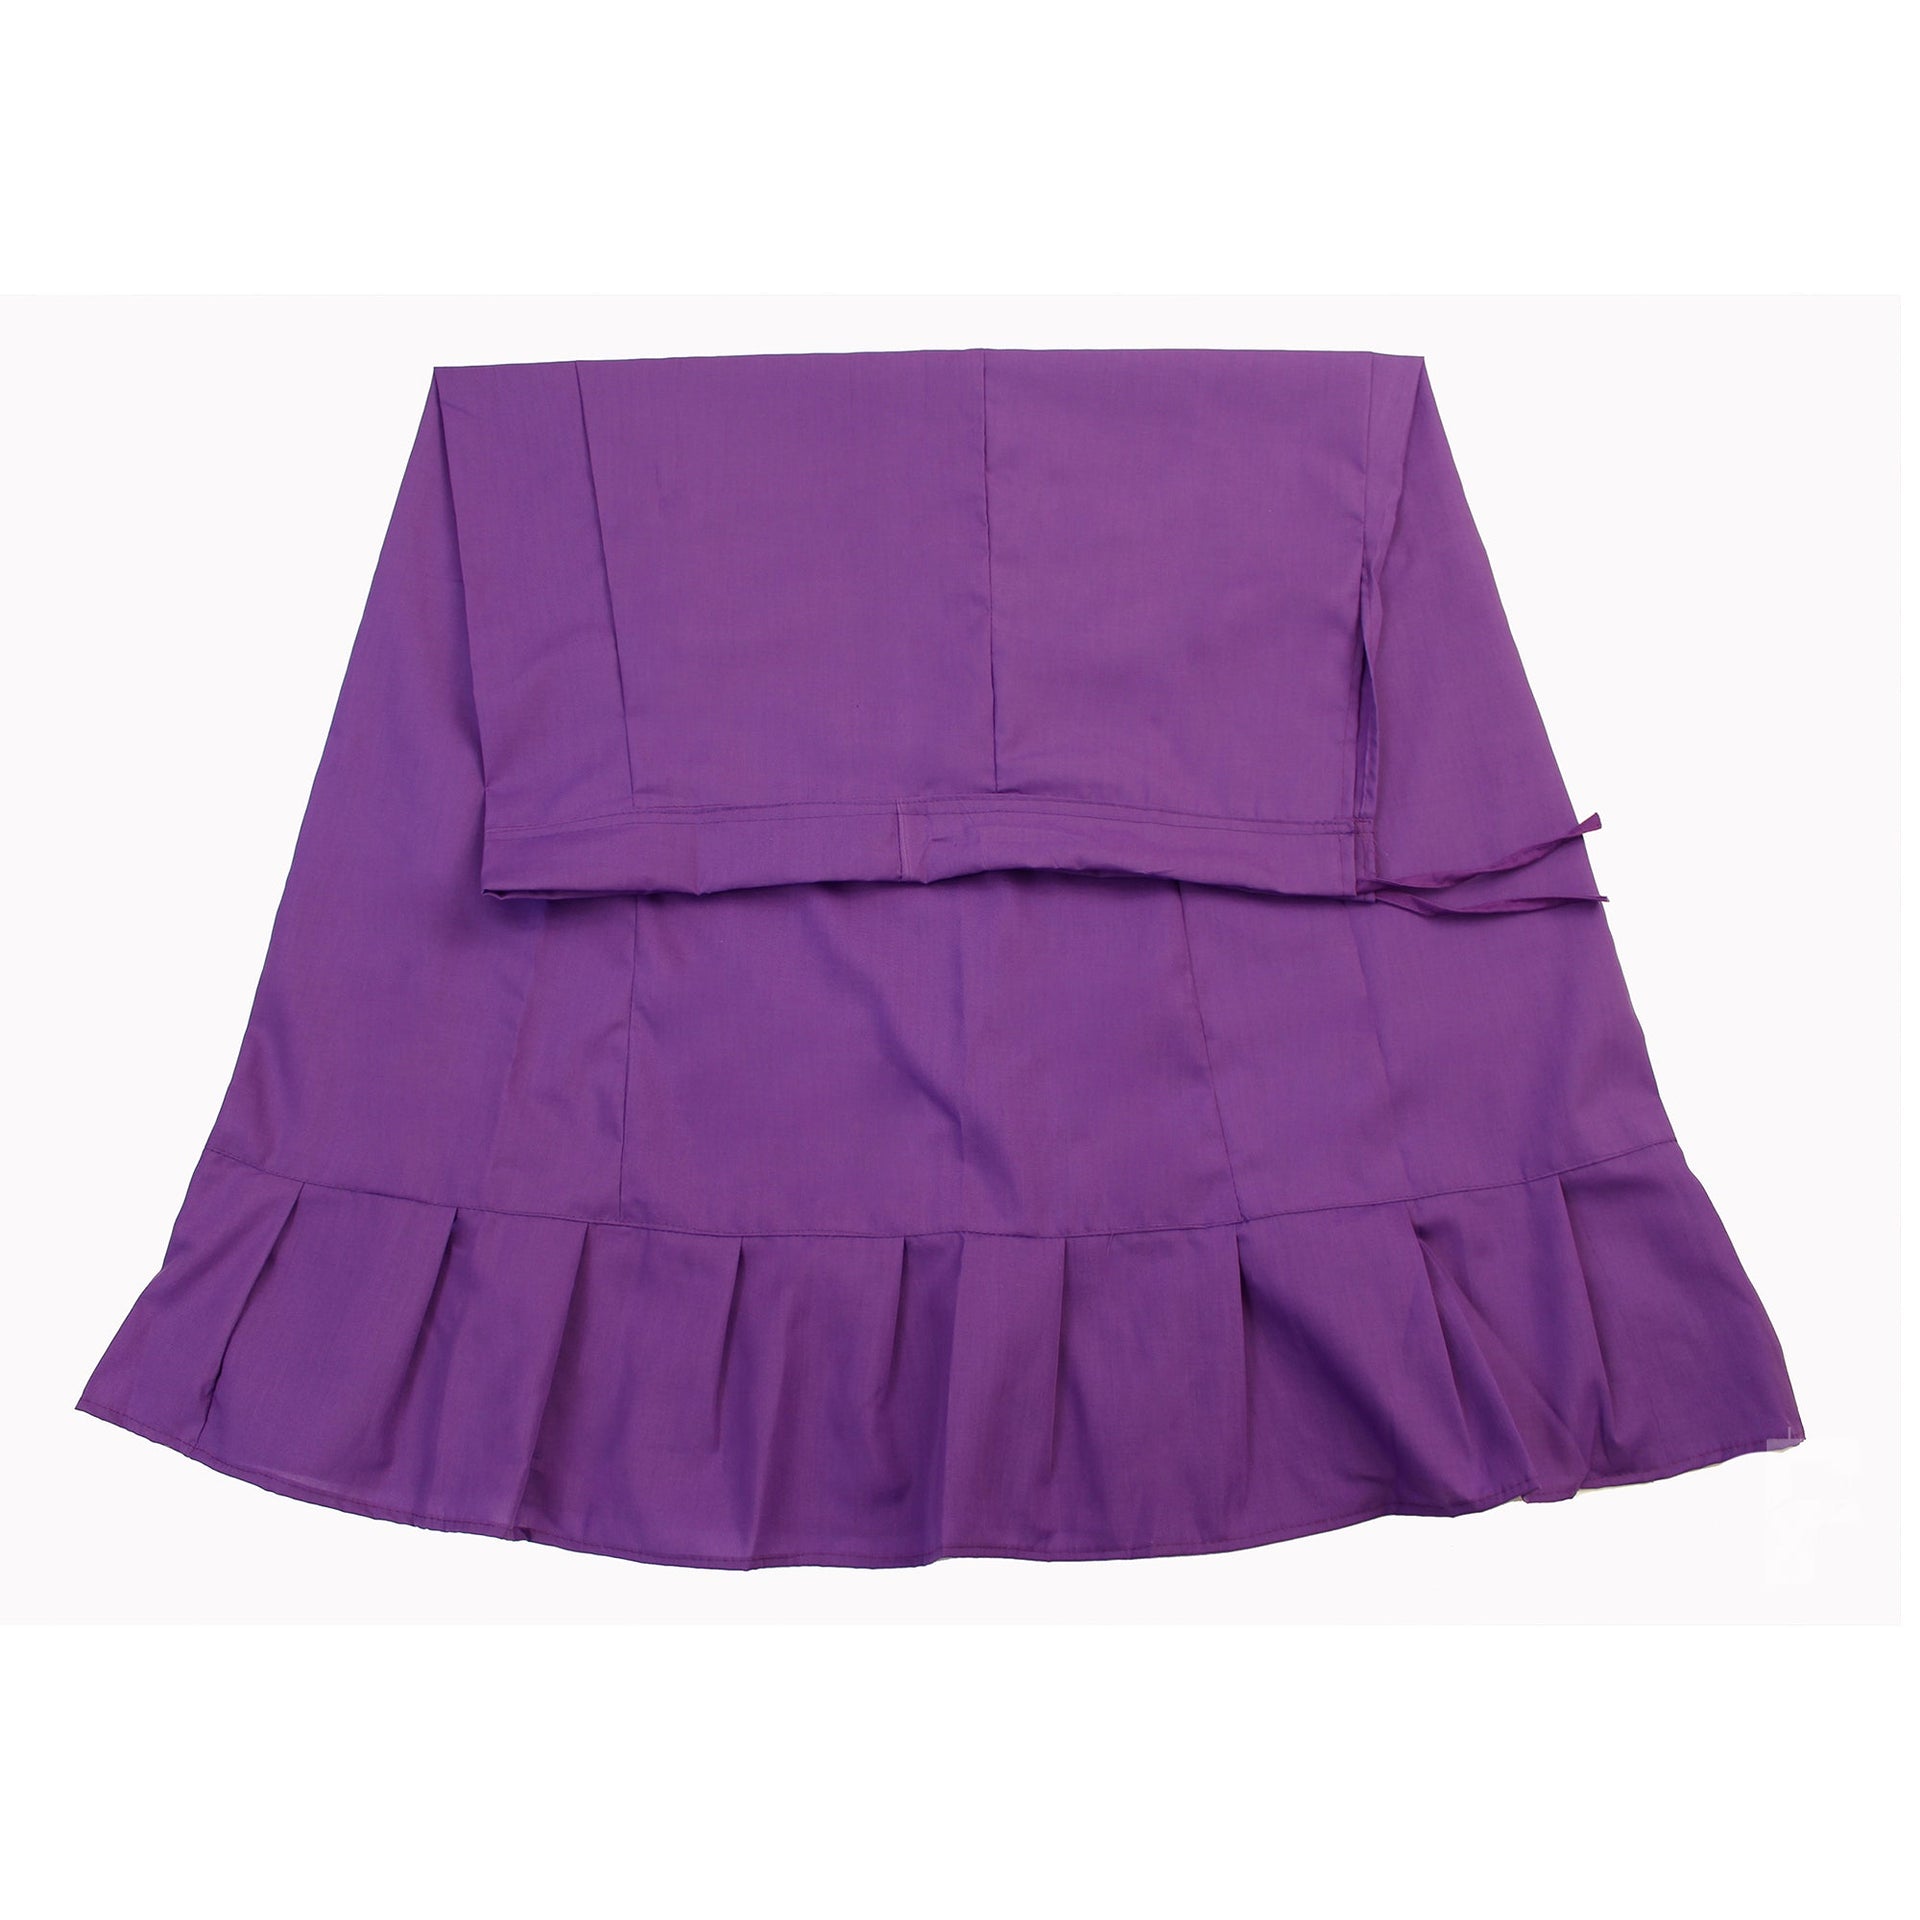 Sari (Saree) Petticoat - Medium Size - Underskirts For Sari's